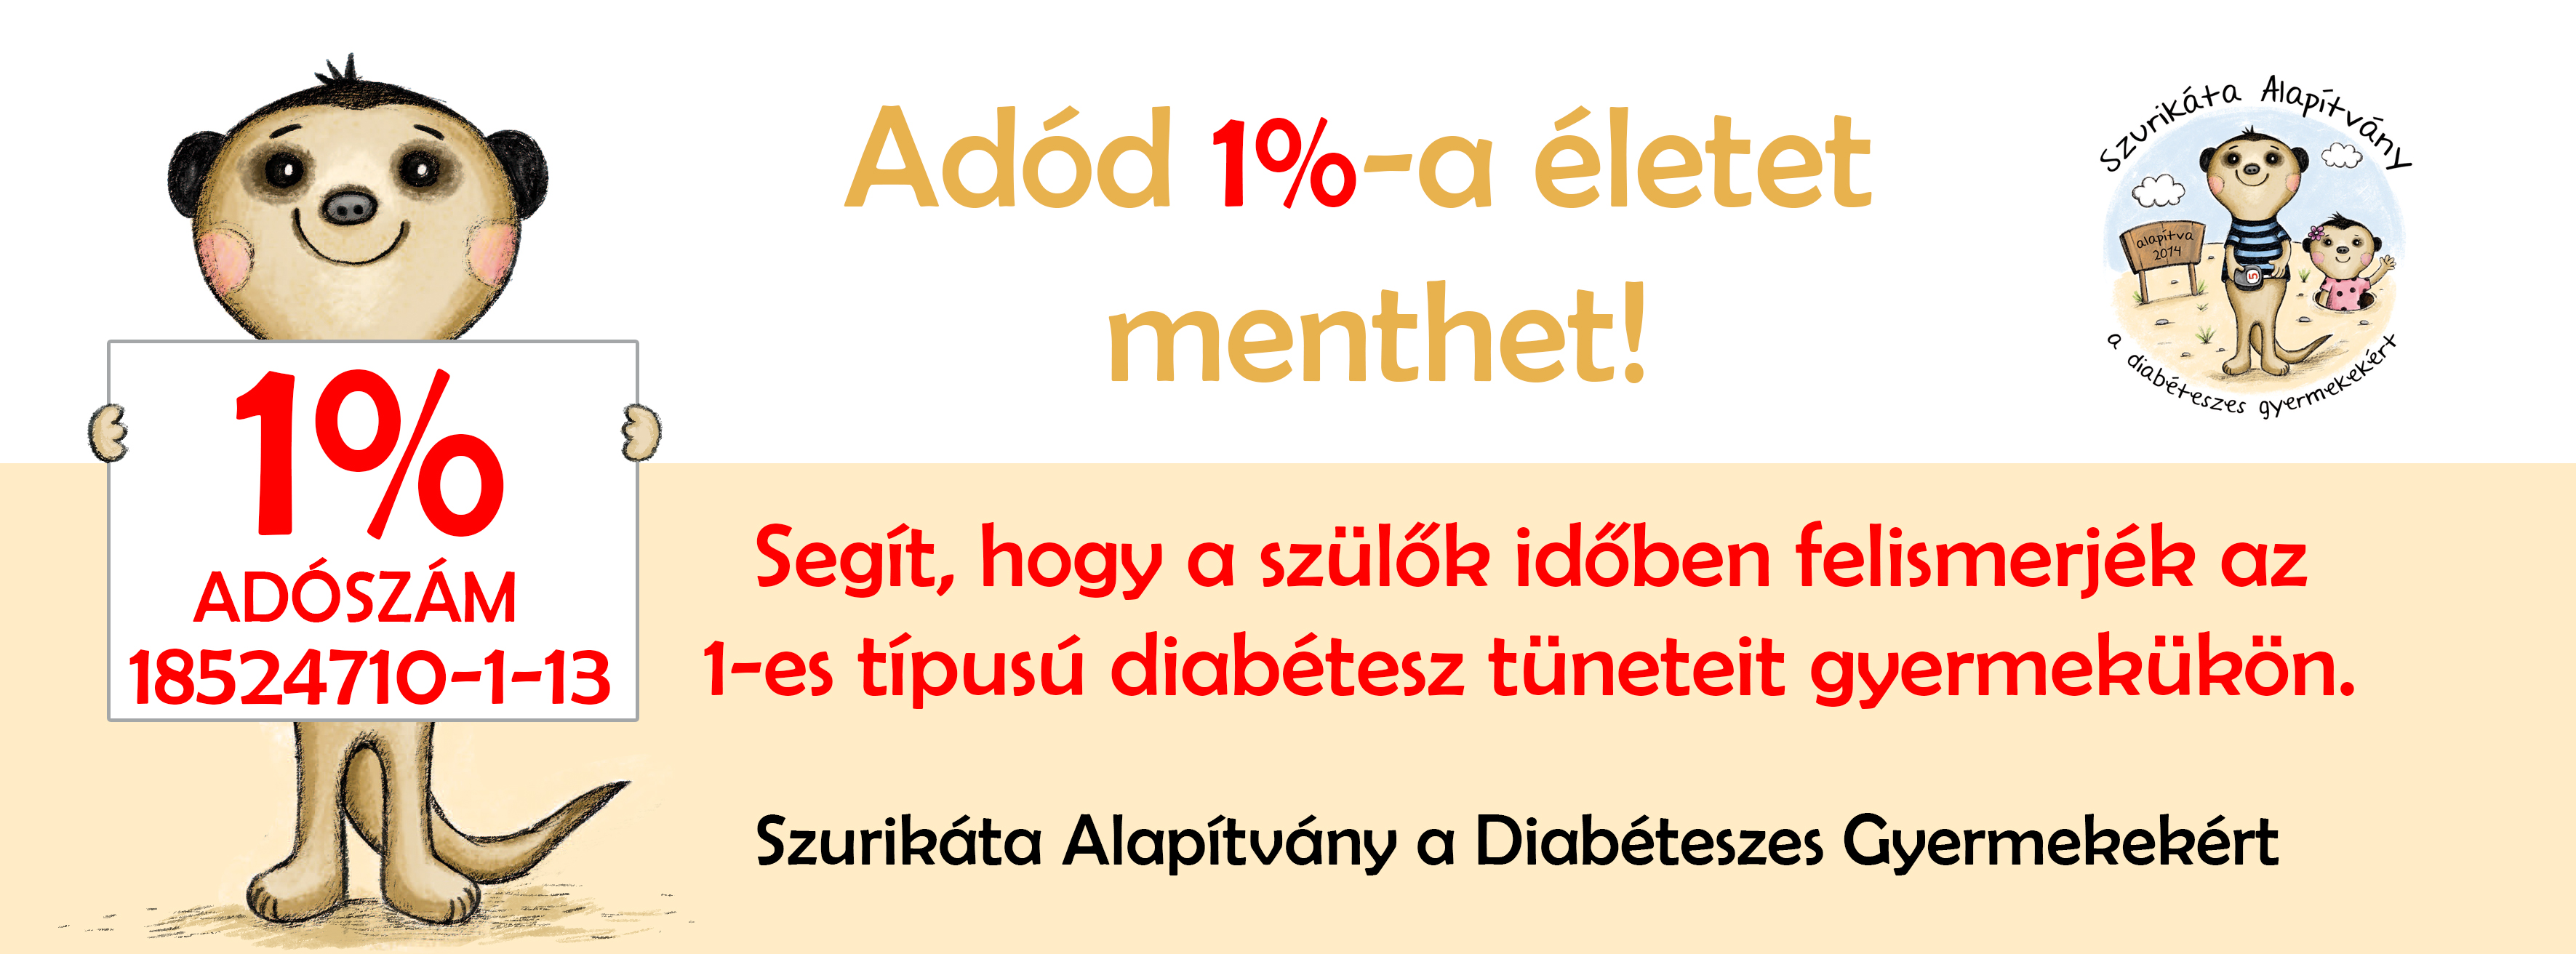 példa a 2-es típusú cukorbetegségre a 2-es típusú diabetes mellitus diagnosztizálásának és kezelésének ajánlásai